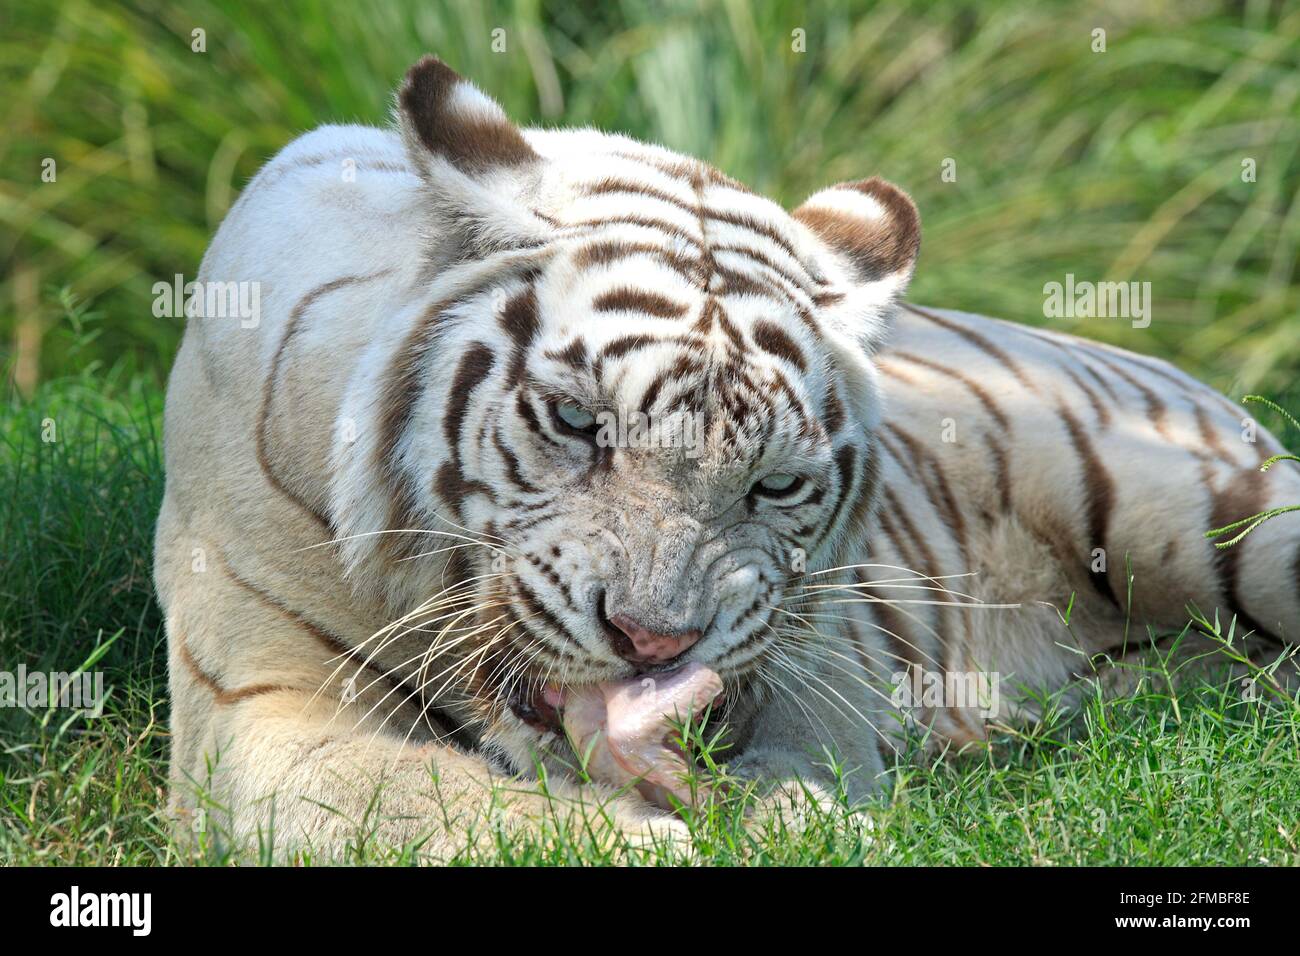 White Bengal Tiger, Panthera tigris. The animal is eating. Stock Photo